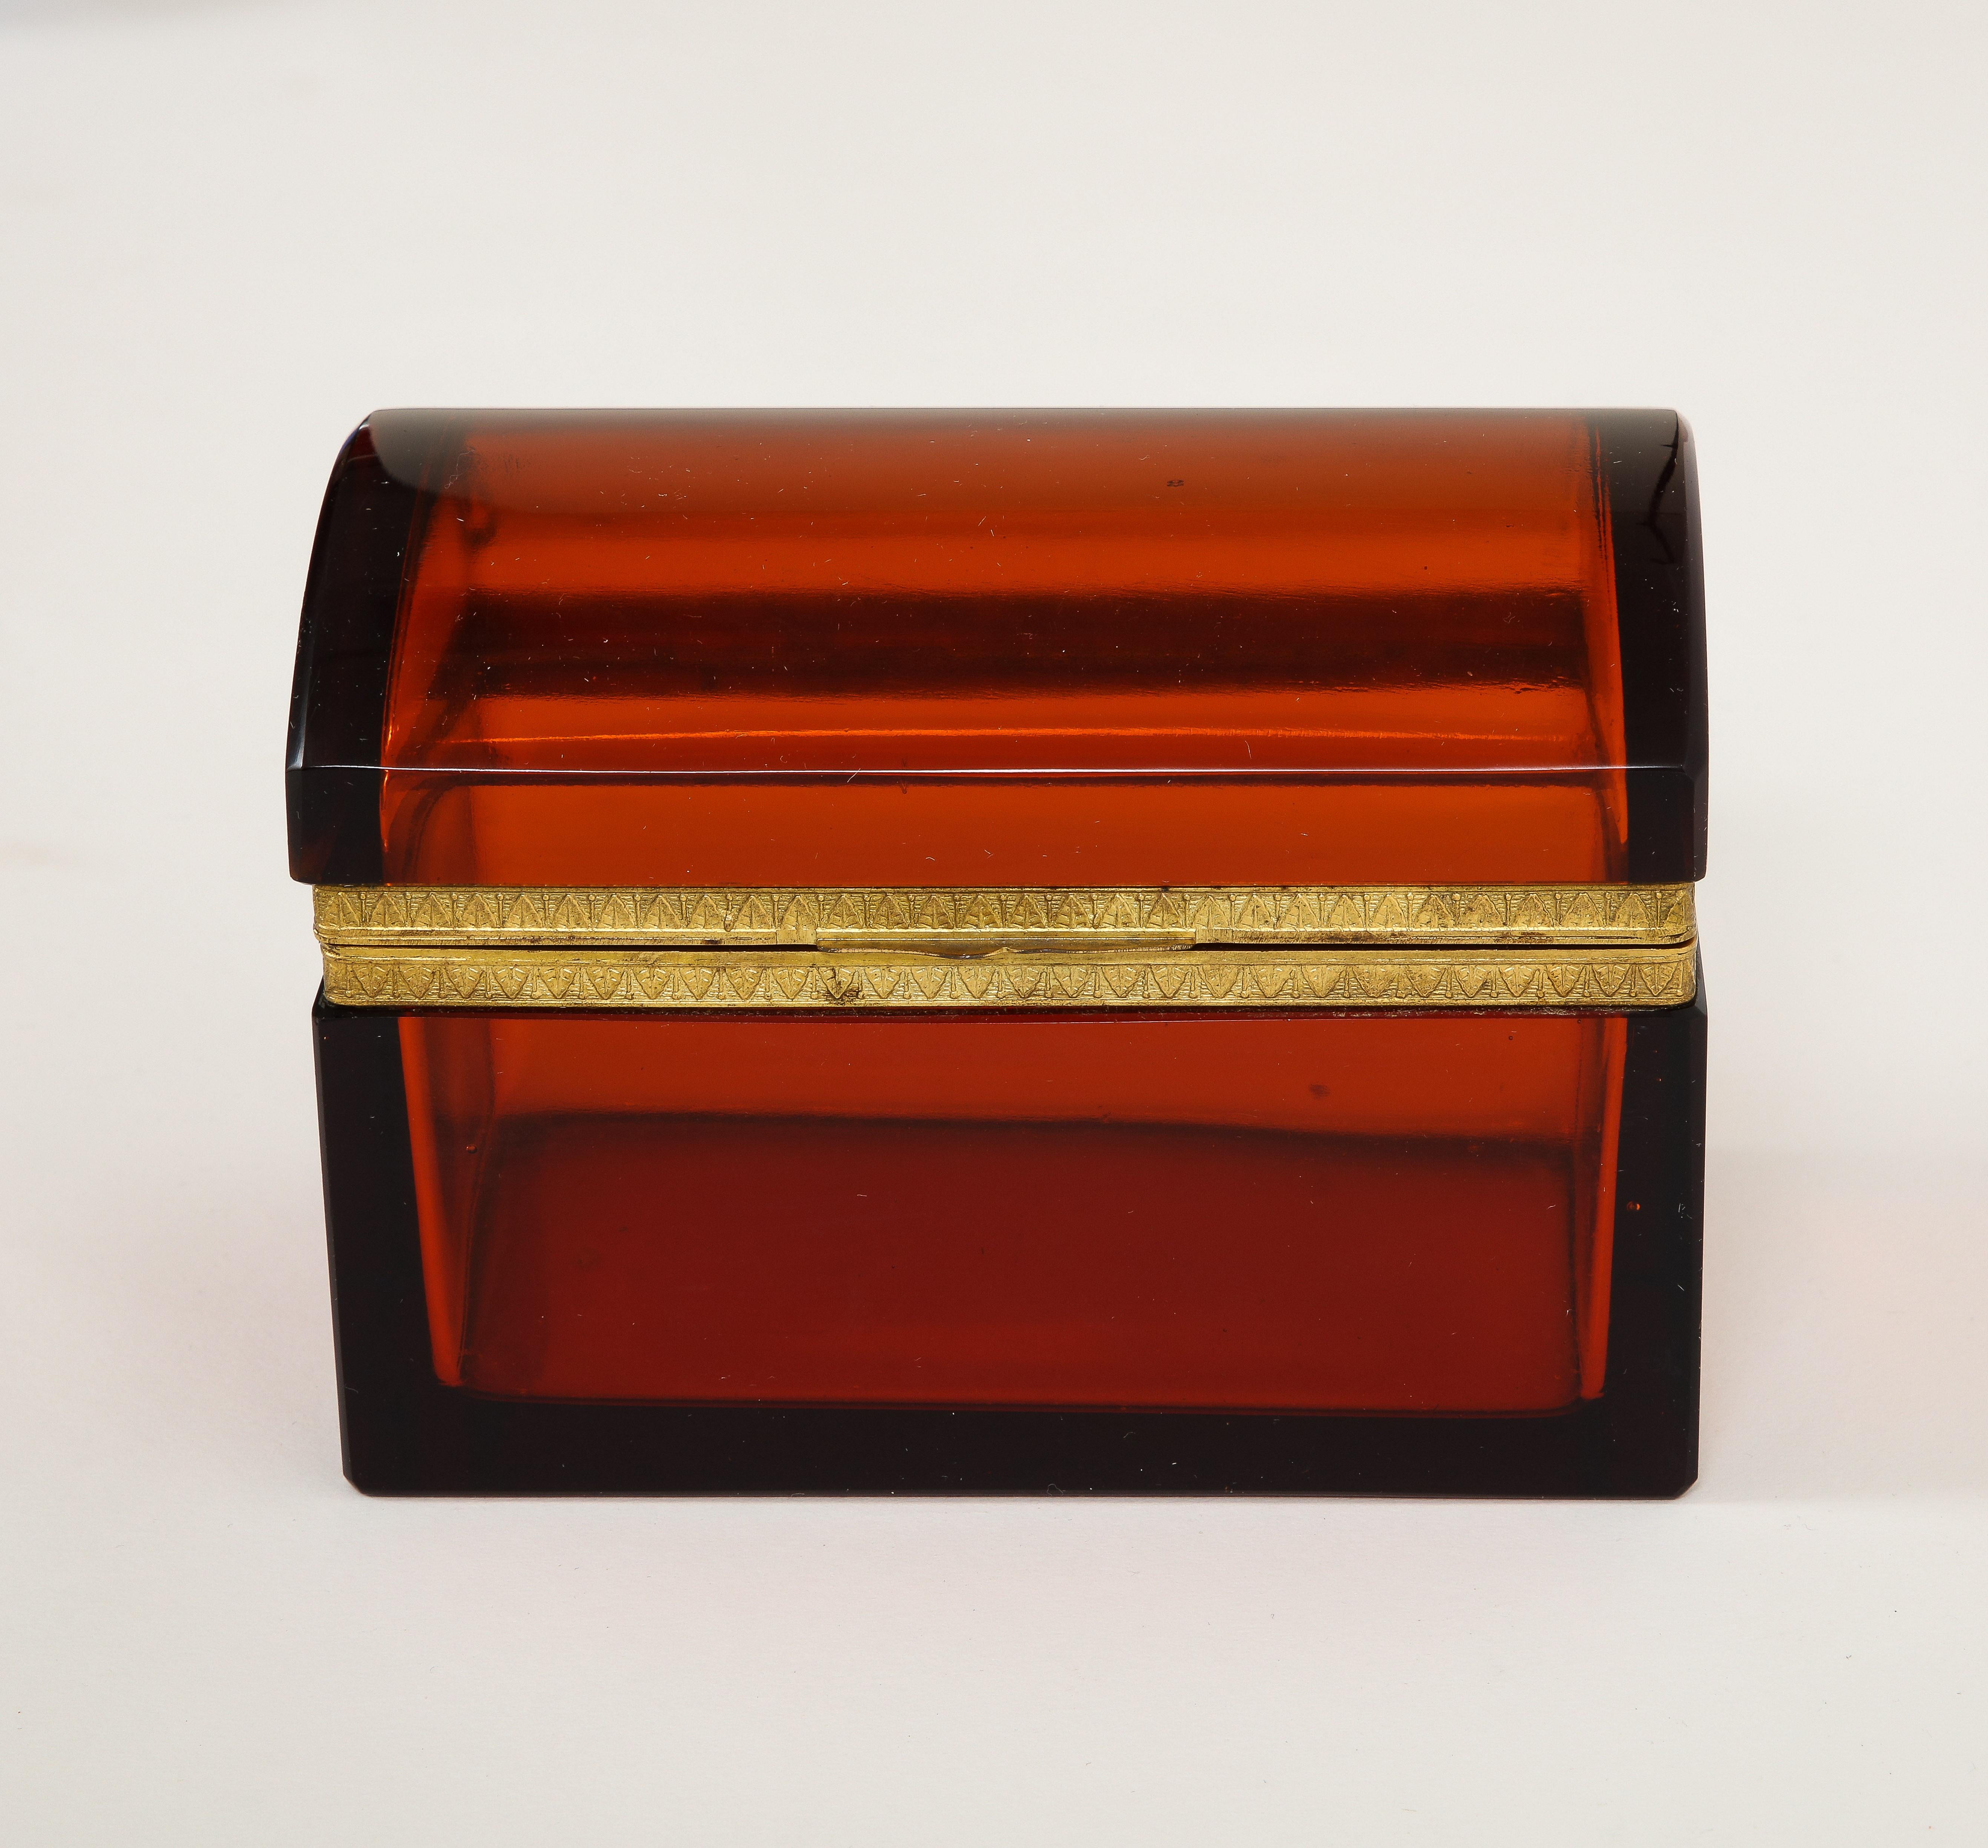 Eine ungewöhnliche Französisch Dore Bronze montiert 19. Jahrhundert Orange / Rot Kristallkasten. Das Kästchen besteht aus zwei Teilen aus orange-rotem französischem Kristall, die an einem fabelhaften, bronzefarbenen Verschluss befestigt sind. Die